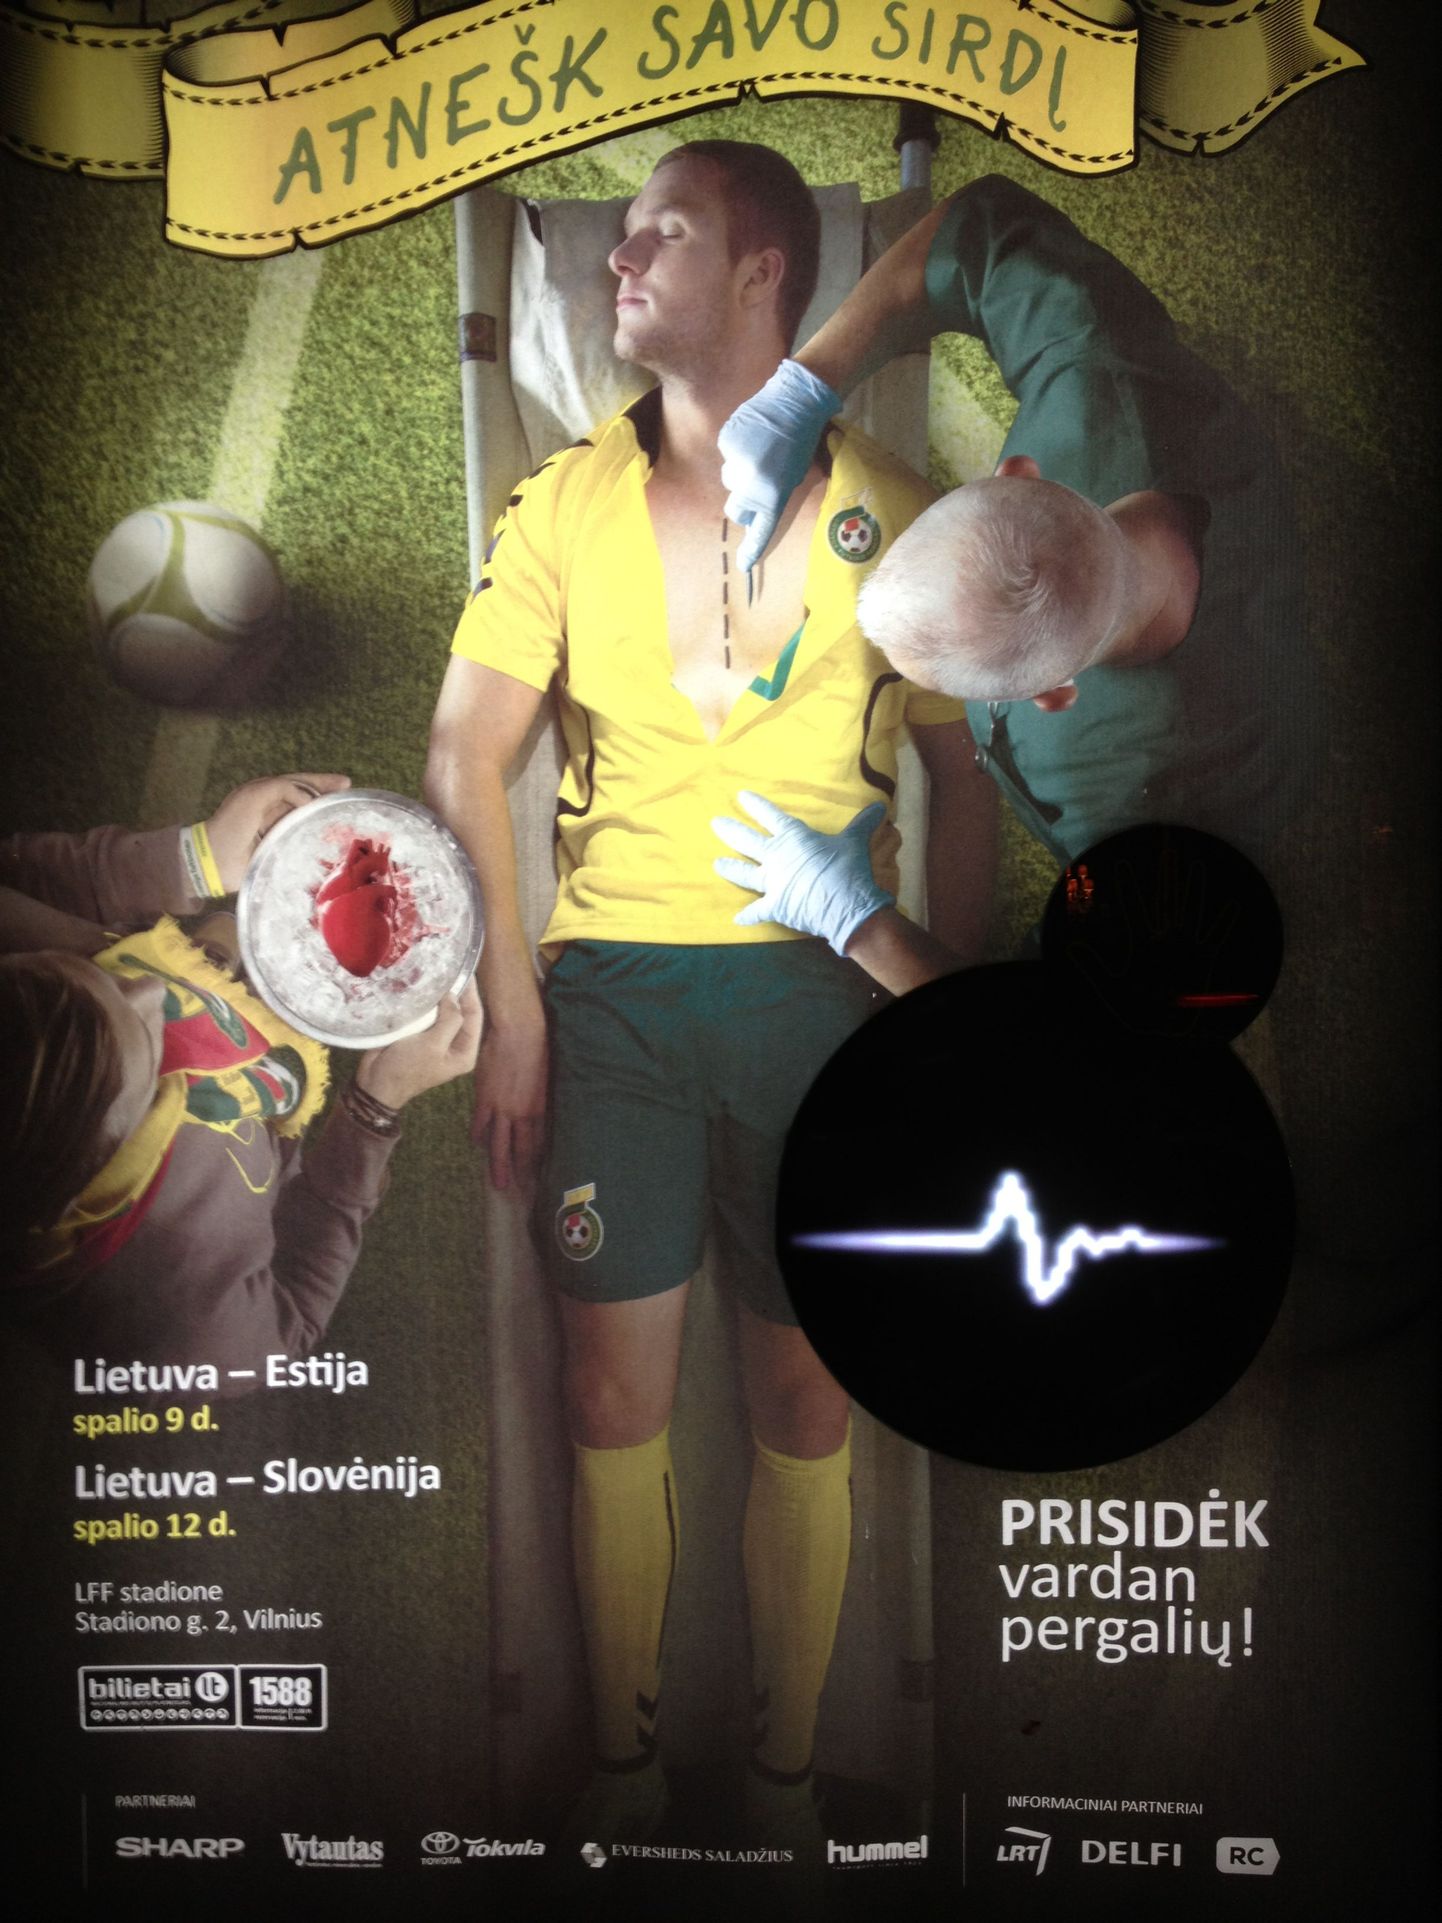 Leedulaste reklaam, mis kutsub jalgpallikoondist toetama.